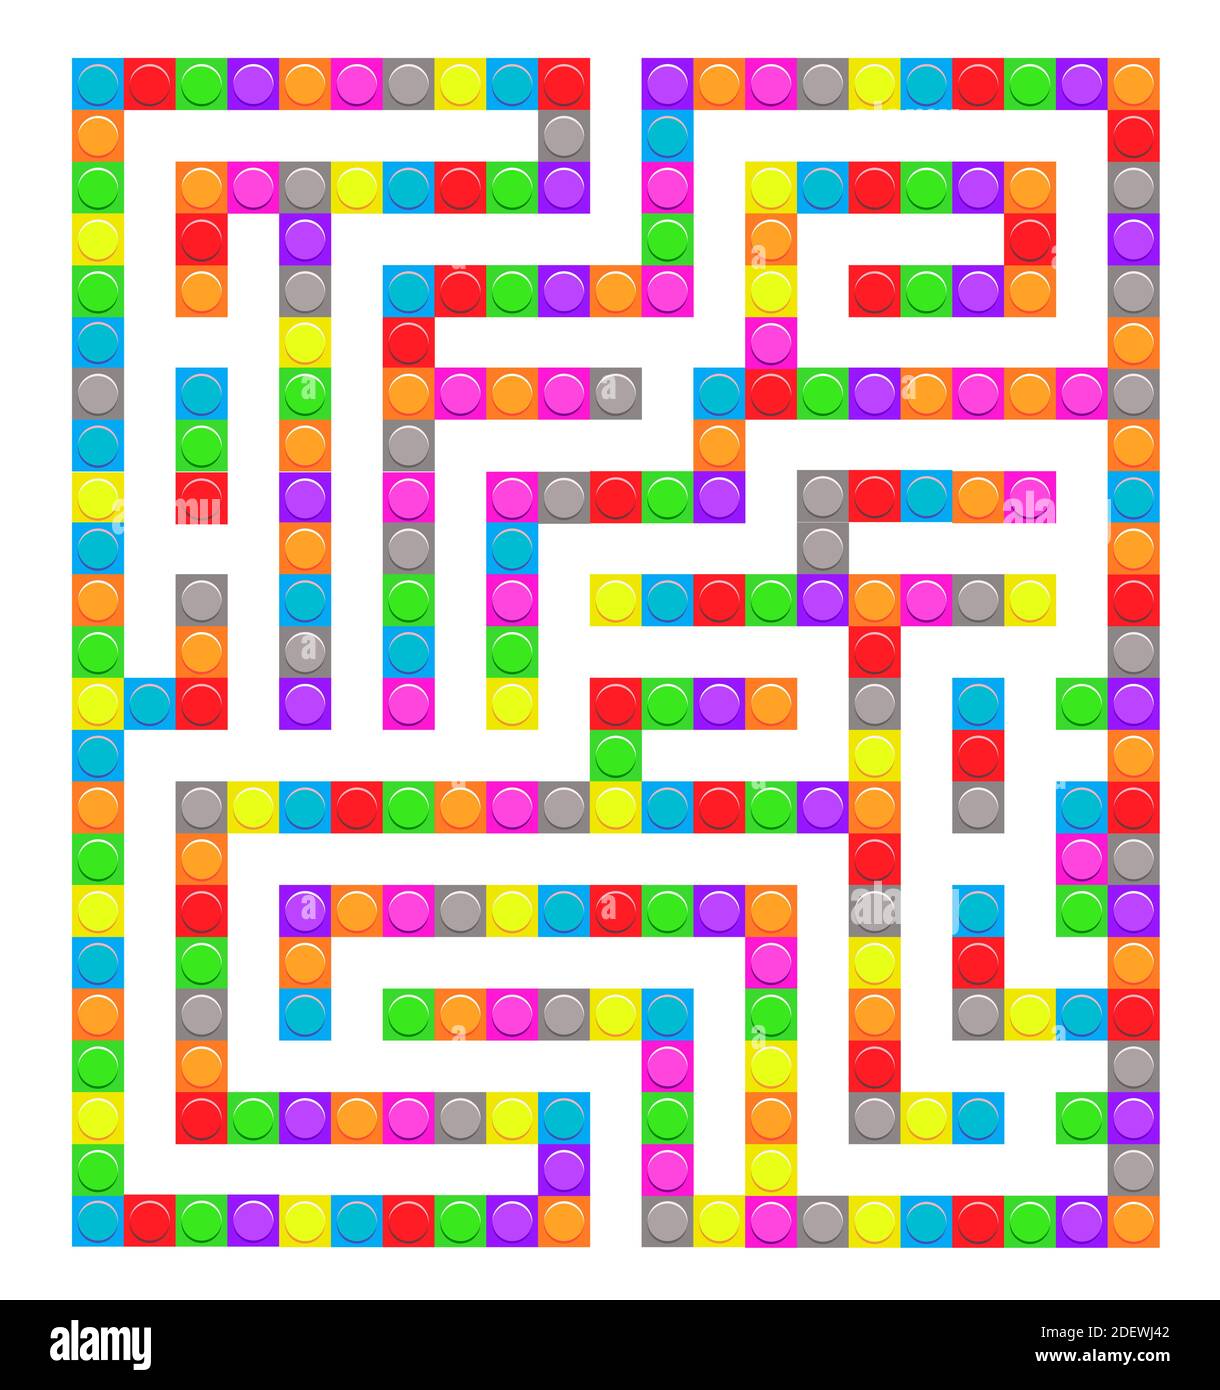 Gioco a labirinto giocattolo di mattoni quadrati per bambini. Logica labirintica. Un ingresso e un modo giusto per andare. Immagine piatta vettoriale Illustrazione Vettoriale